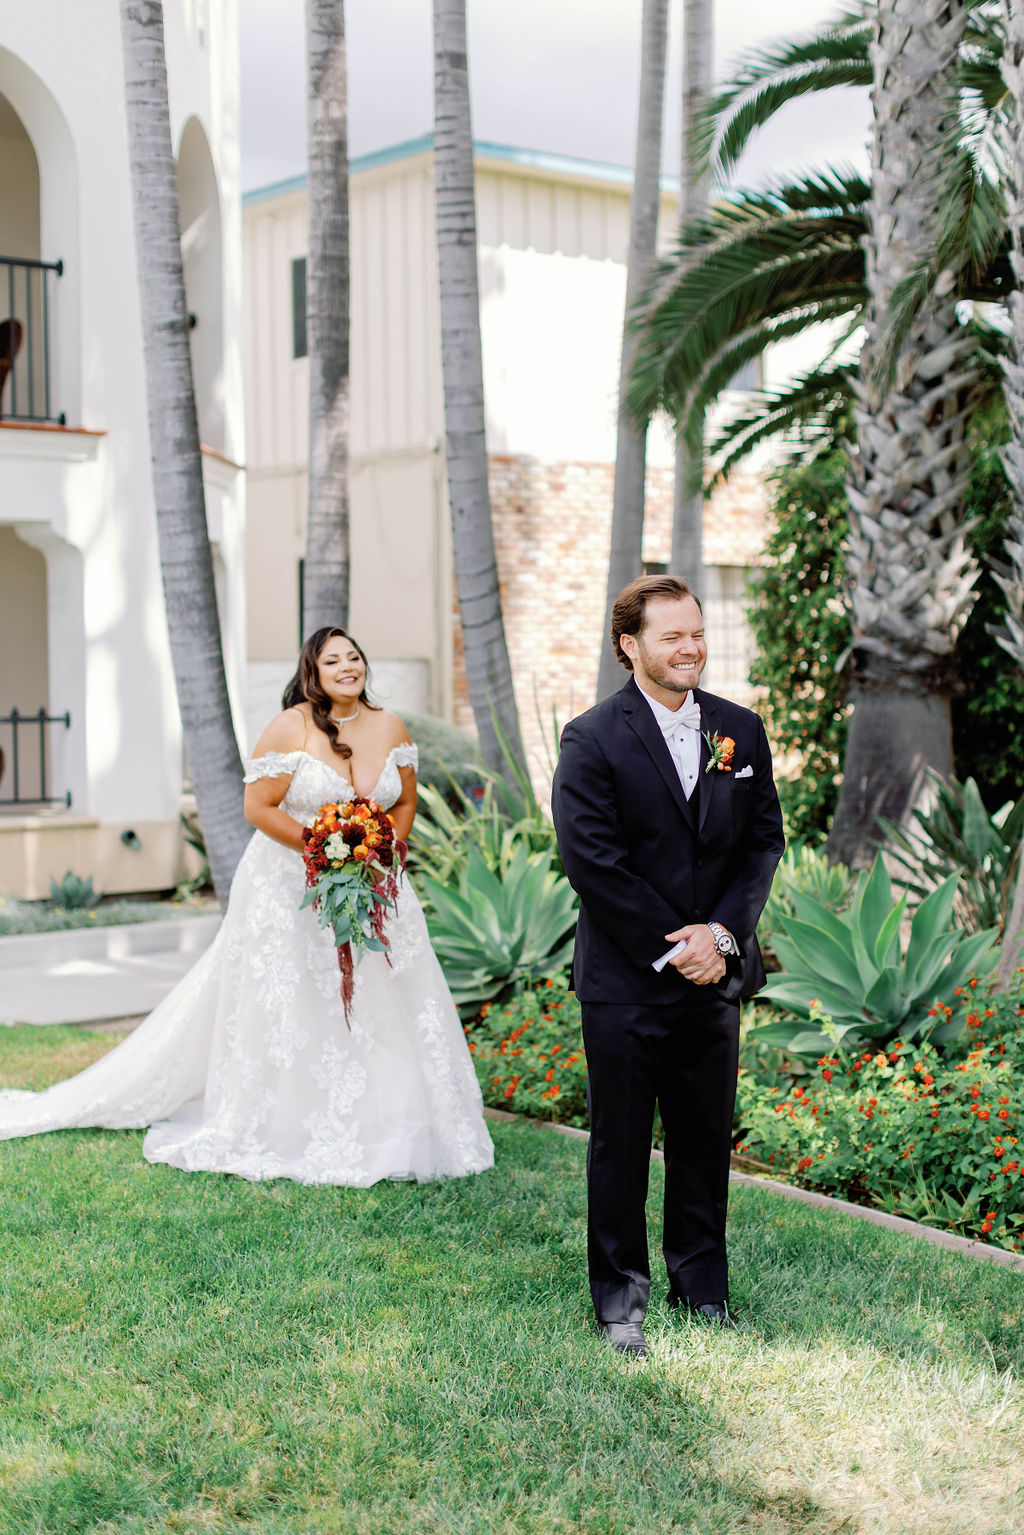 First Look at Mission Santa Barbara wedding | Photo by Sarah Block Photography